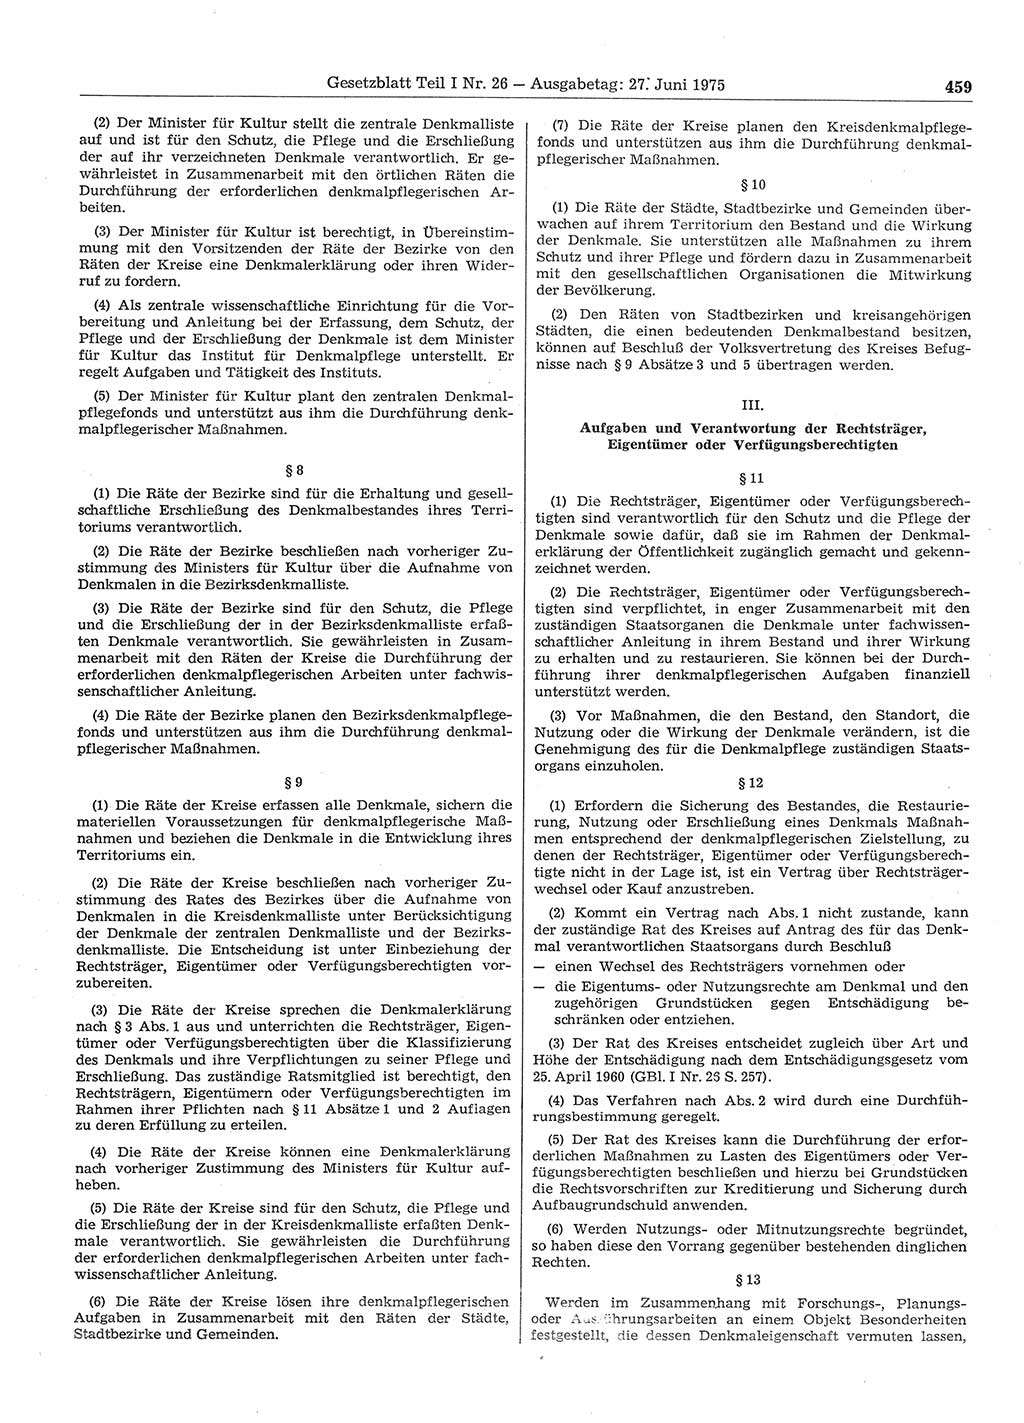 Gesetzblatt (GBl.) der Deutschen Demokratischen Republik (DDR) Teil Ⅰ 1975, Seite 459 (GBl. DDR Ⅰ 1975, S. 459)